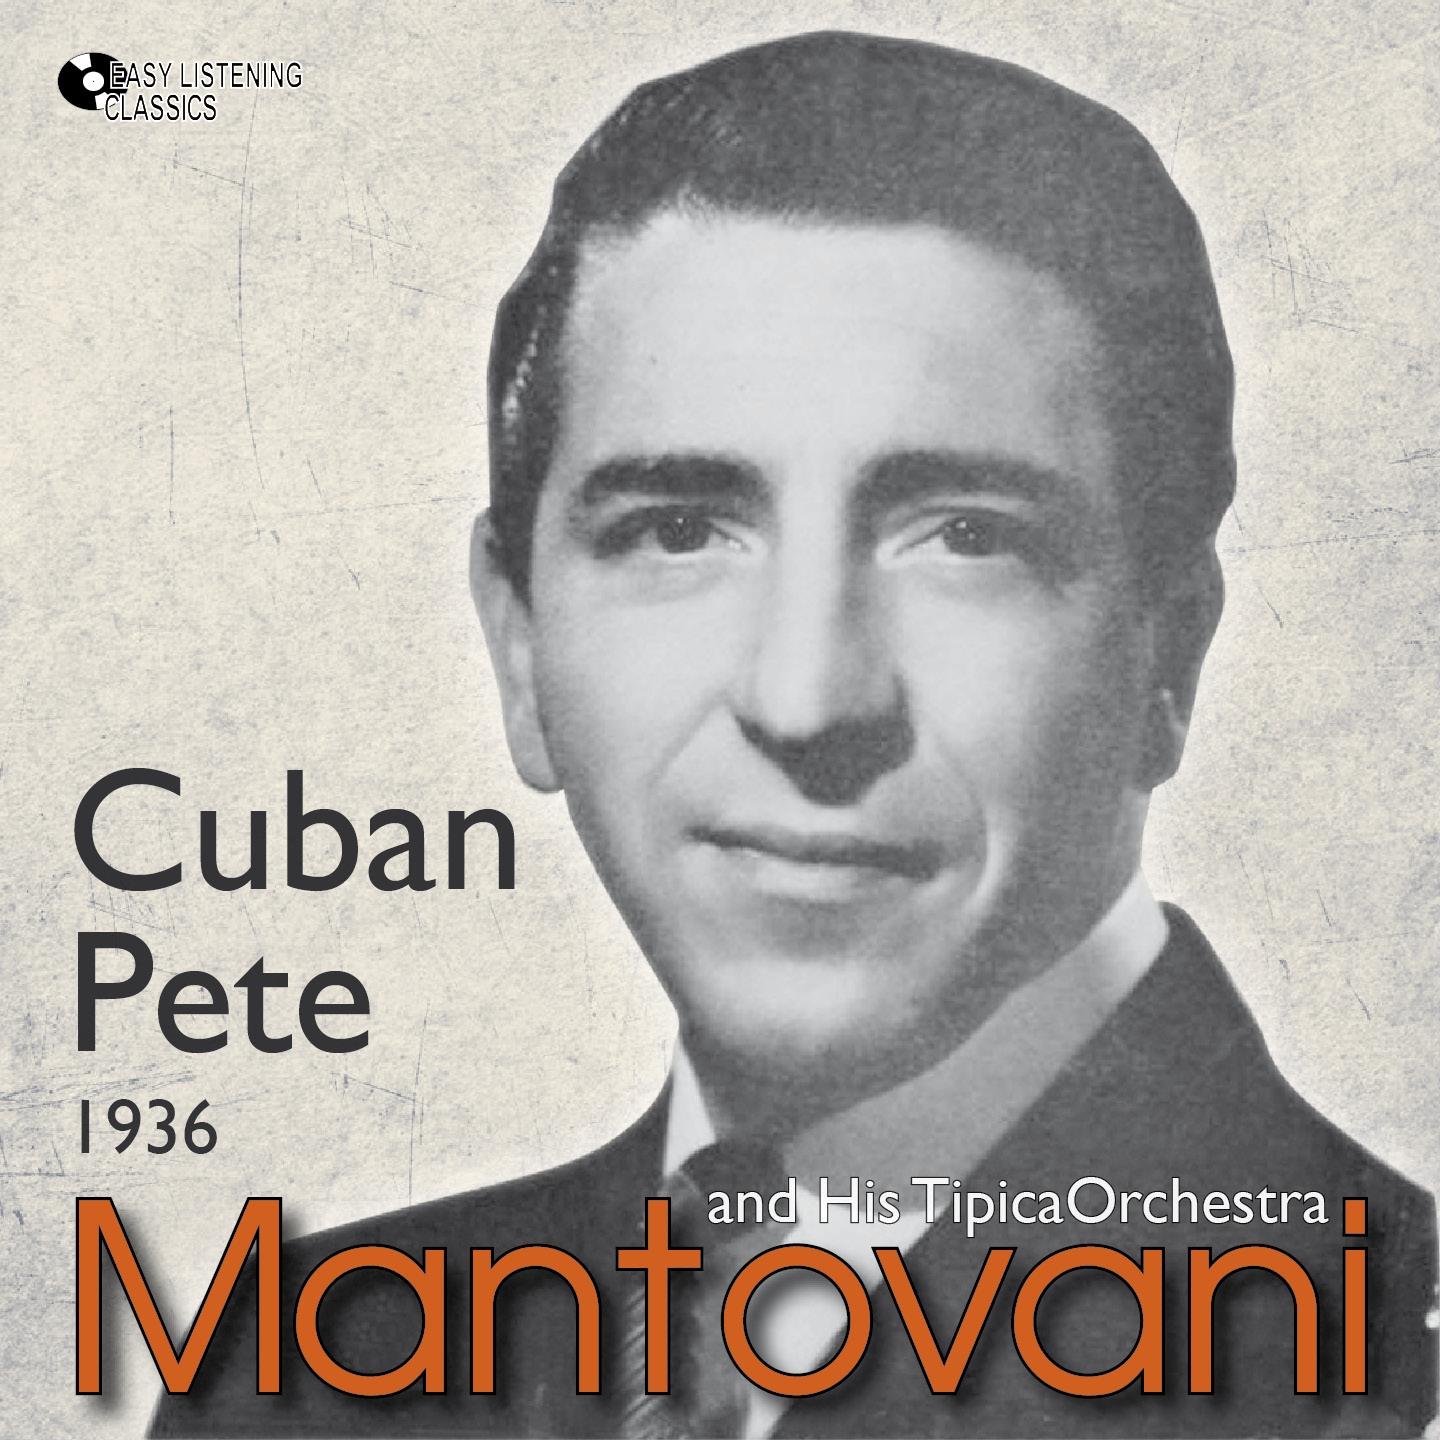 Cuban Pete (1936)